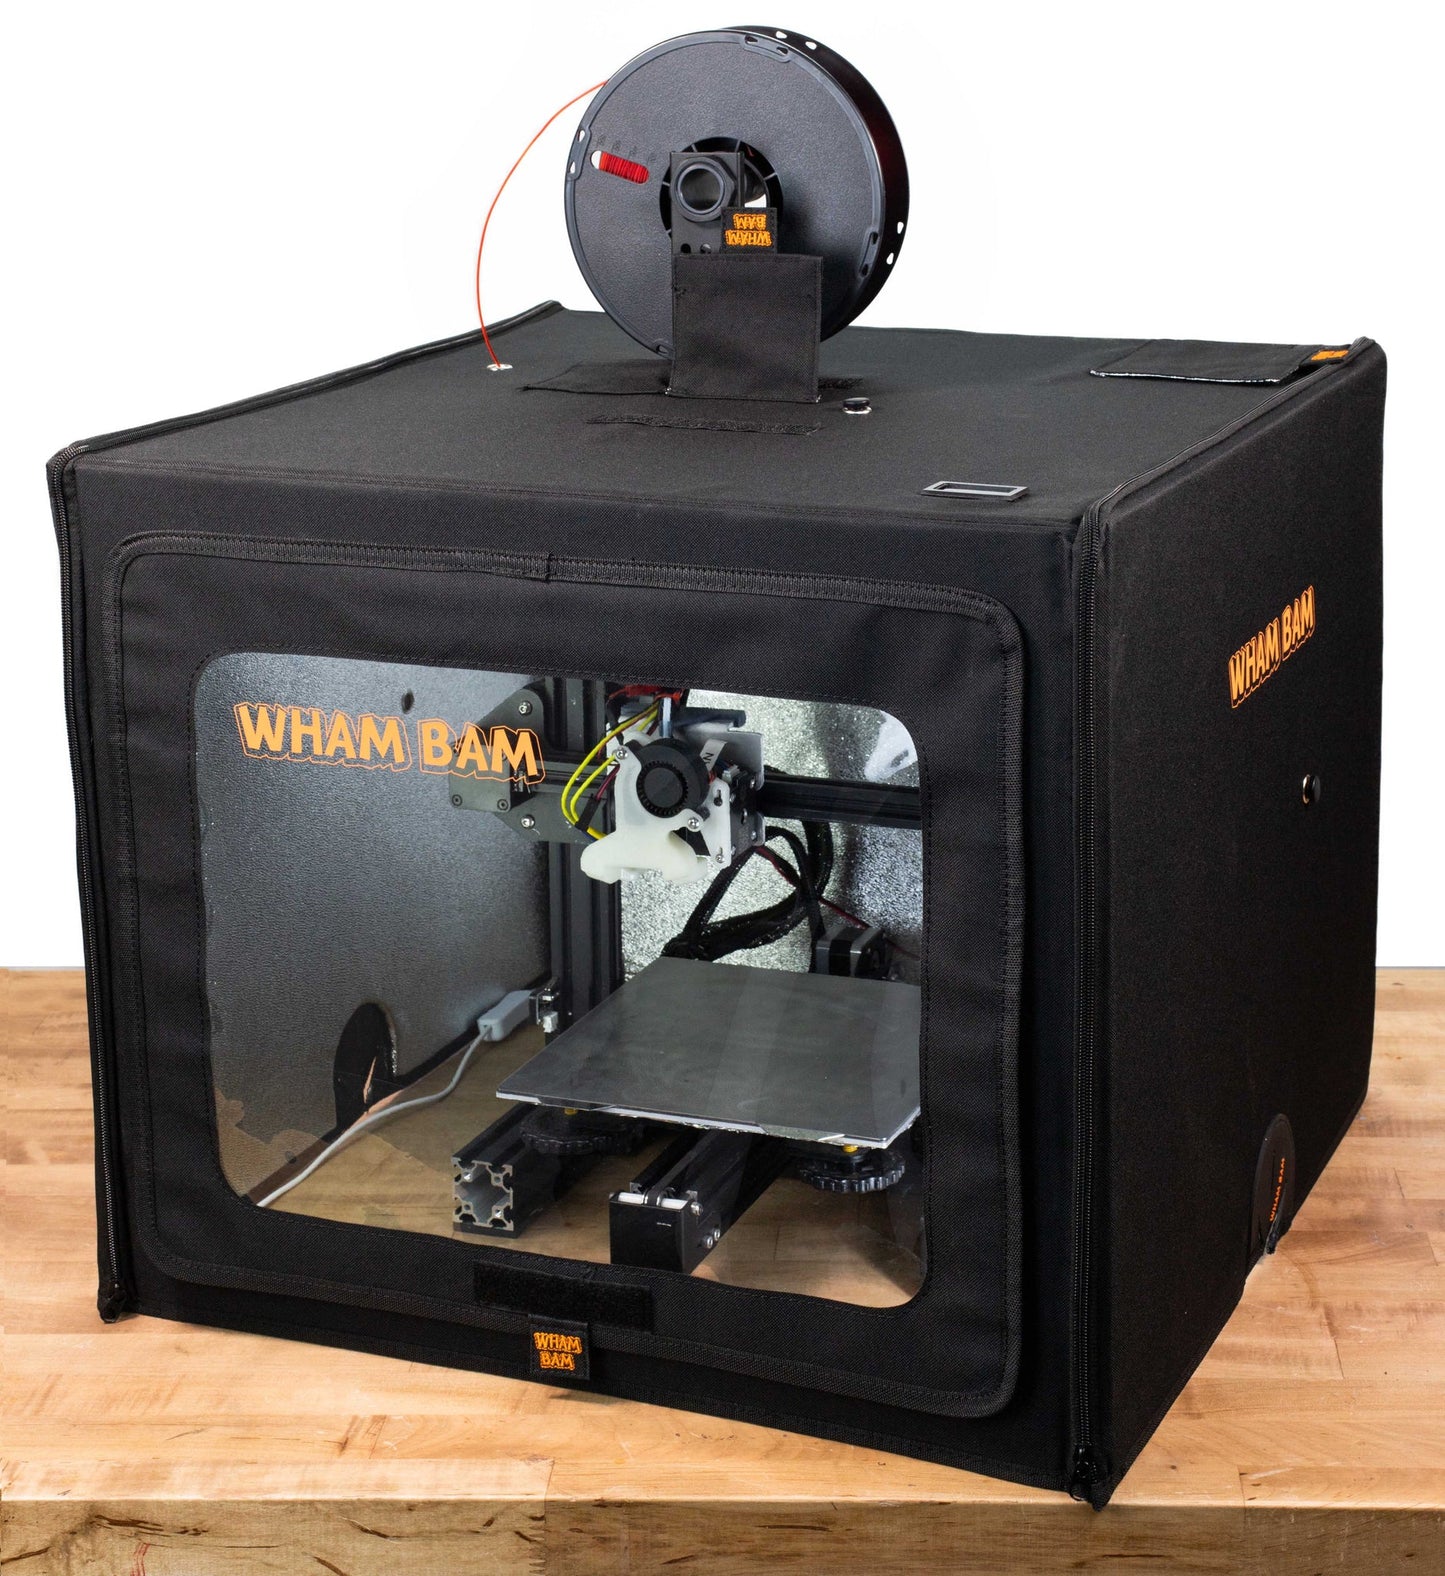 Wham Bam HotBox (V2) 3D Printer Enclosure